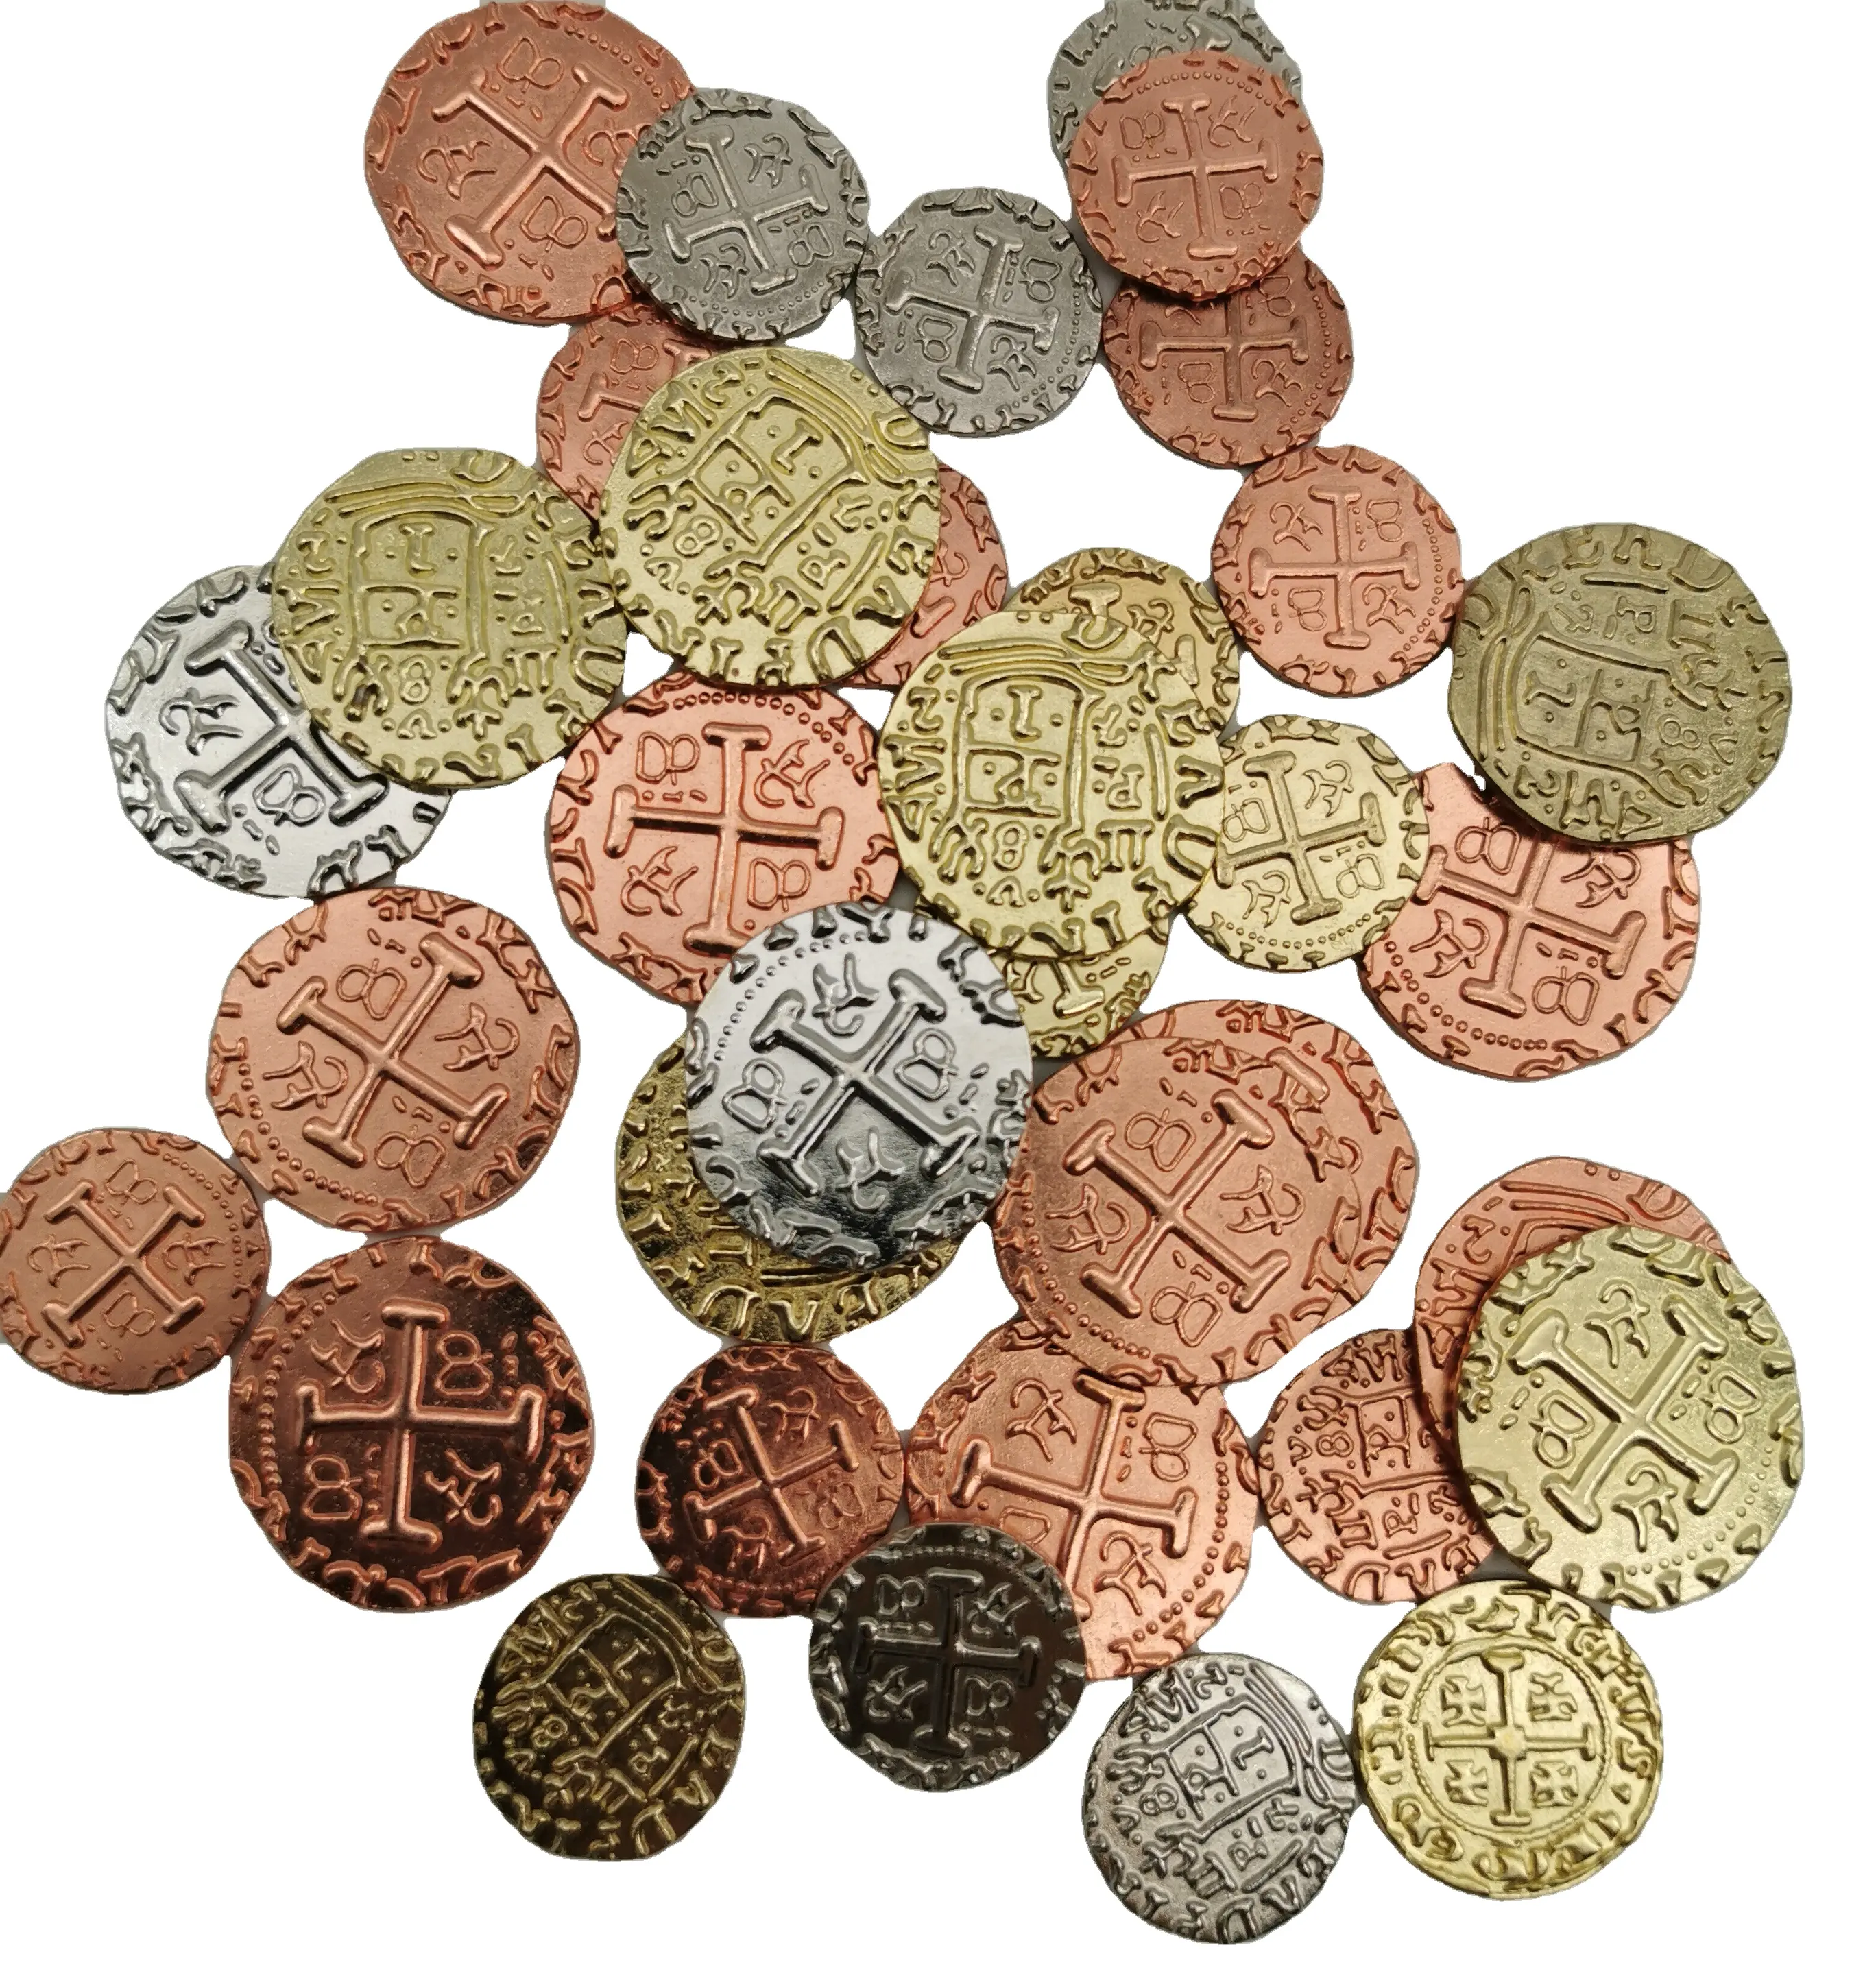 Moneta di metallo all'ingrosso per il gioco prezzo più economico monete pirata per il gioco e la collezione